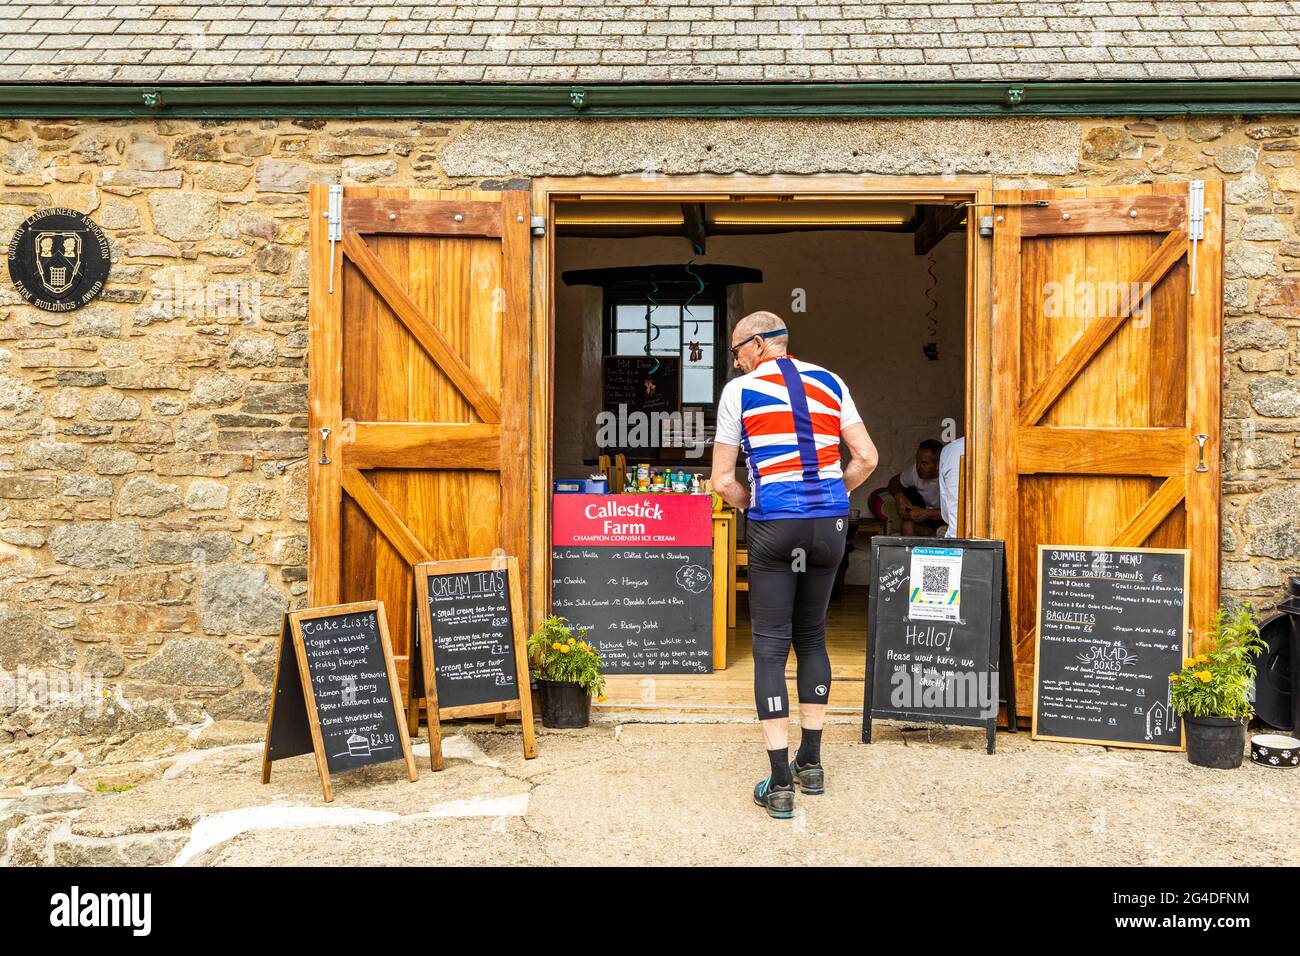 Un cycliste portant un maillot d'été drapeau syndical s'arrête pour une pause dans un café-restaurant bien connu près de St Agnes Cornwall Angleterre Banque D'Images